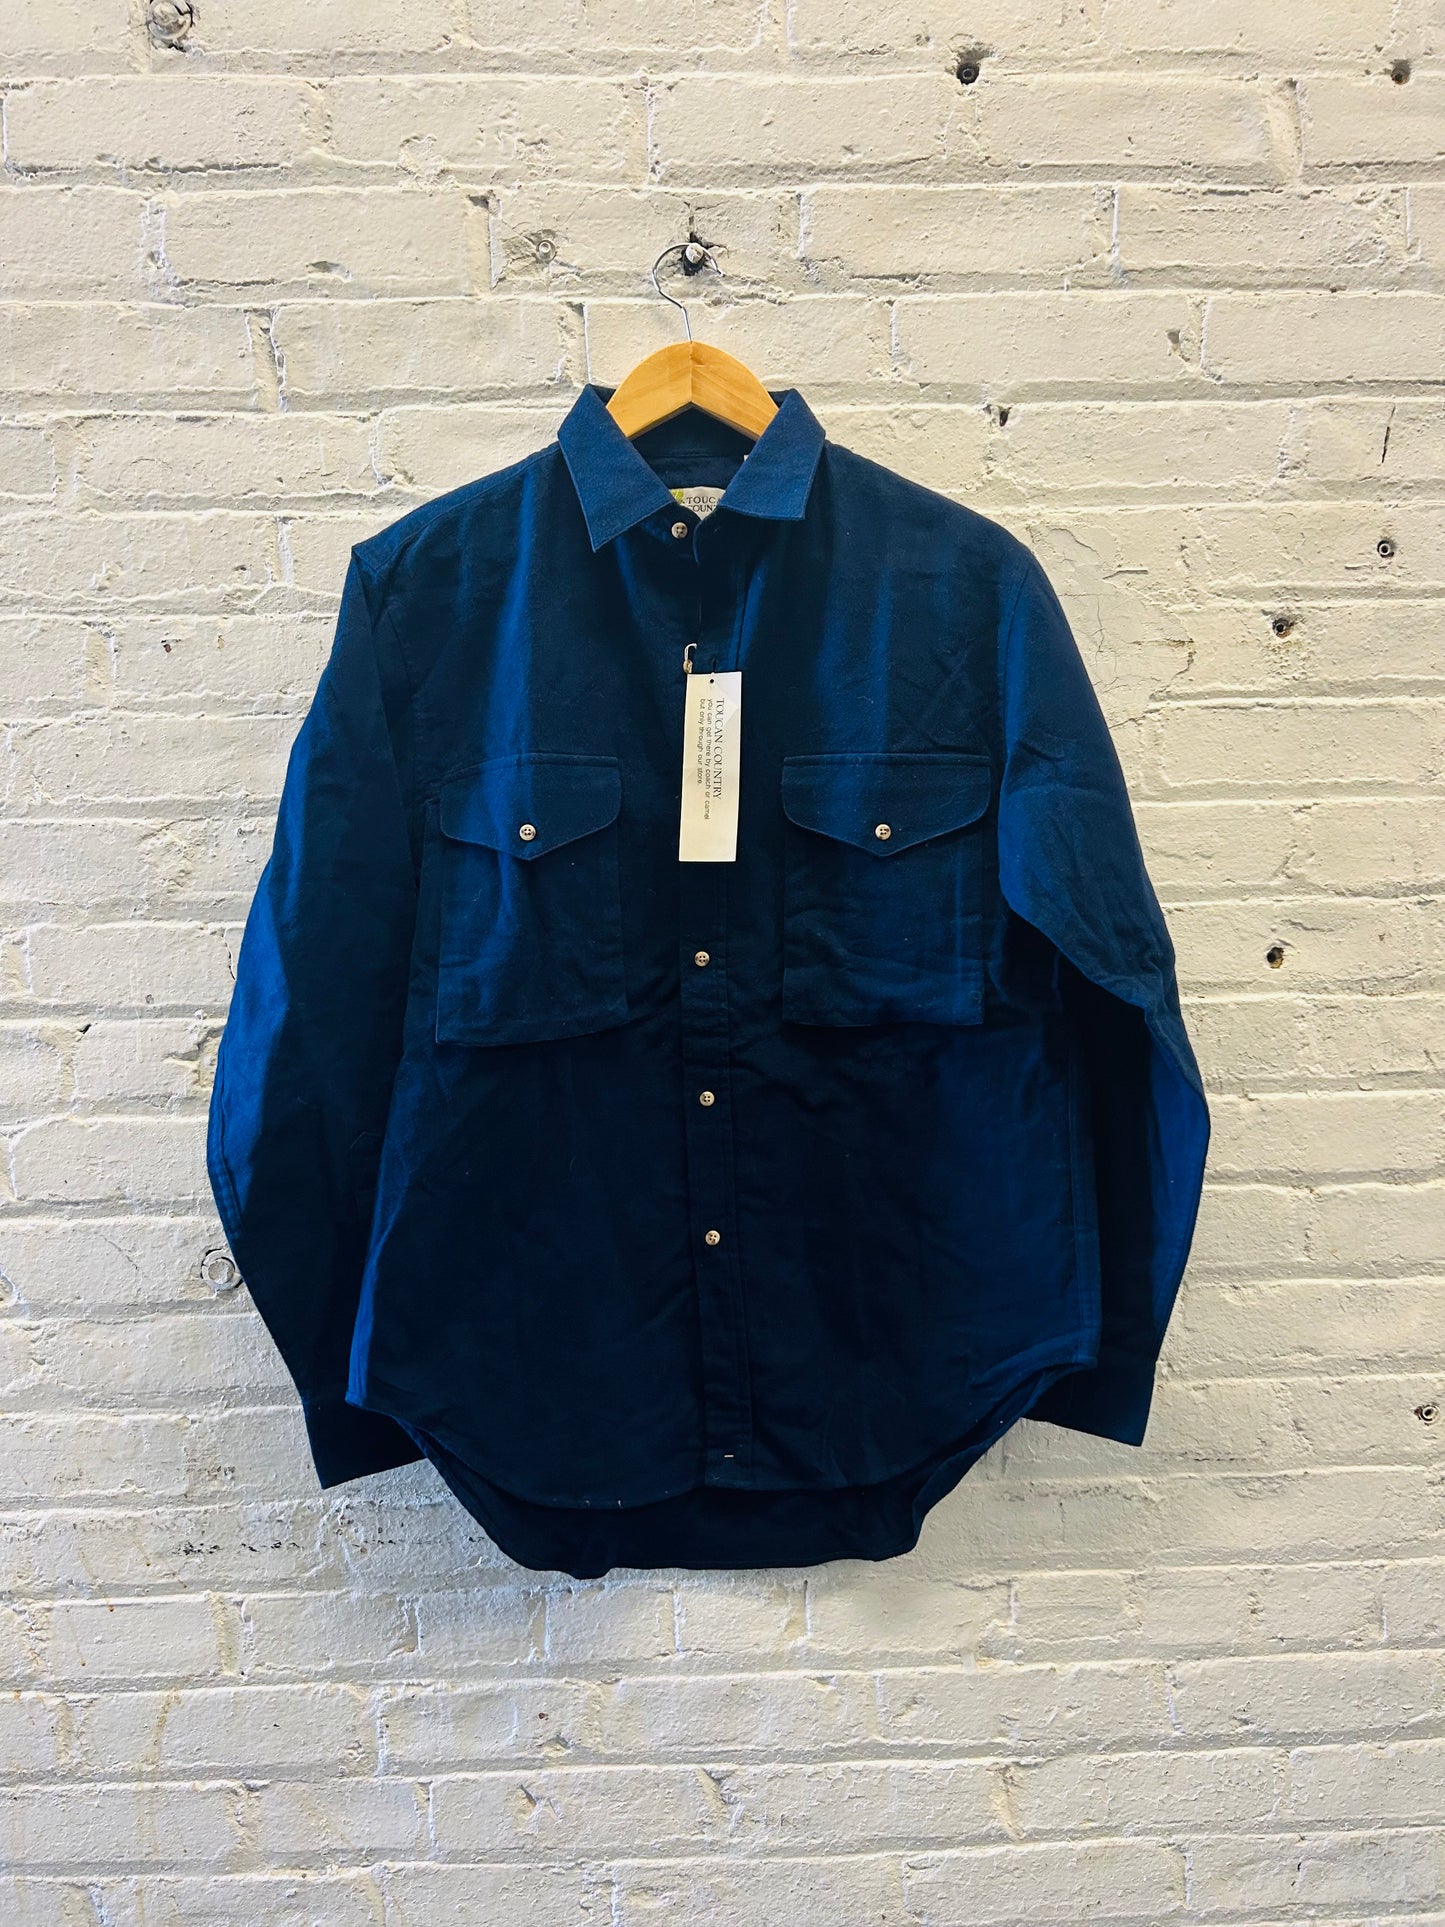 NWT Button Down Blue Shirt - Medium/Large